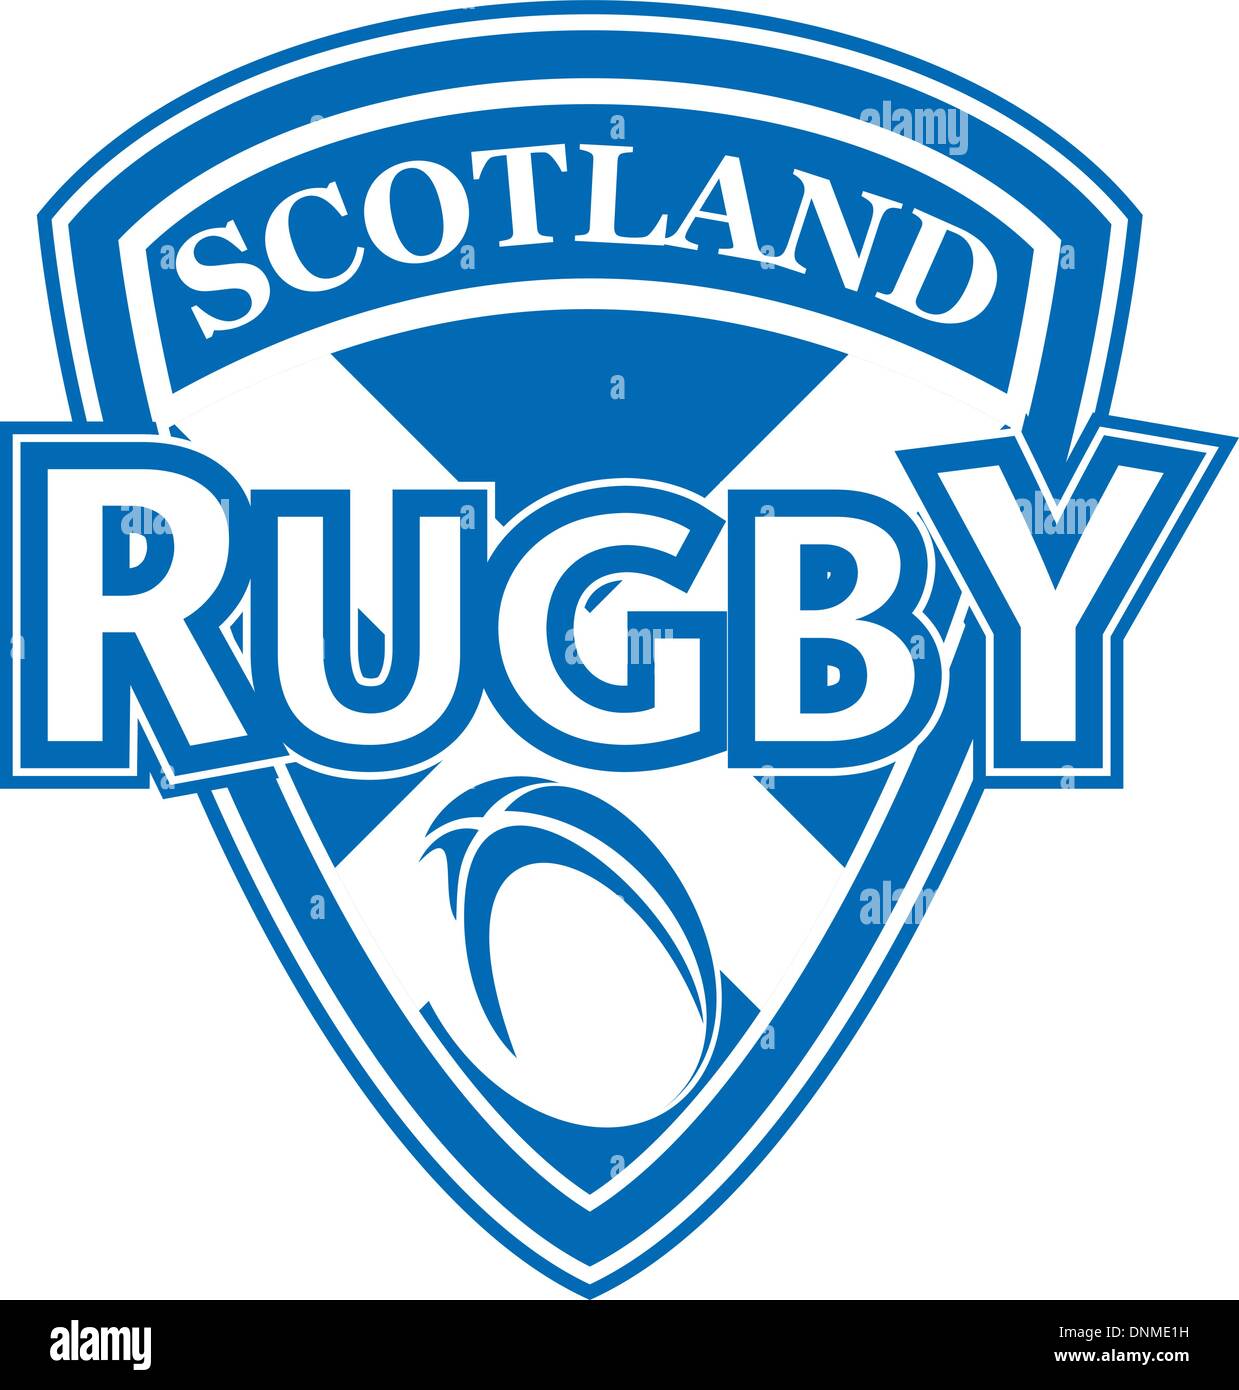 Abbildung einer Ikone zeigt einen Schild und Rugby-Ball mit Worten "Rugby Schottland" Stock Vektor